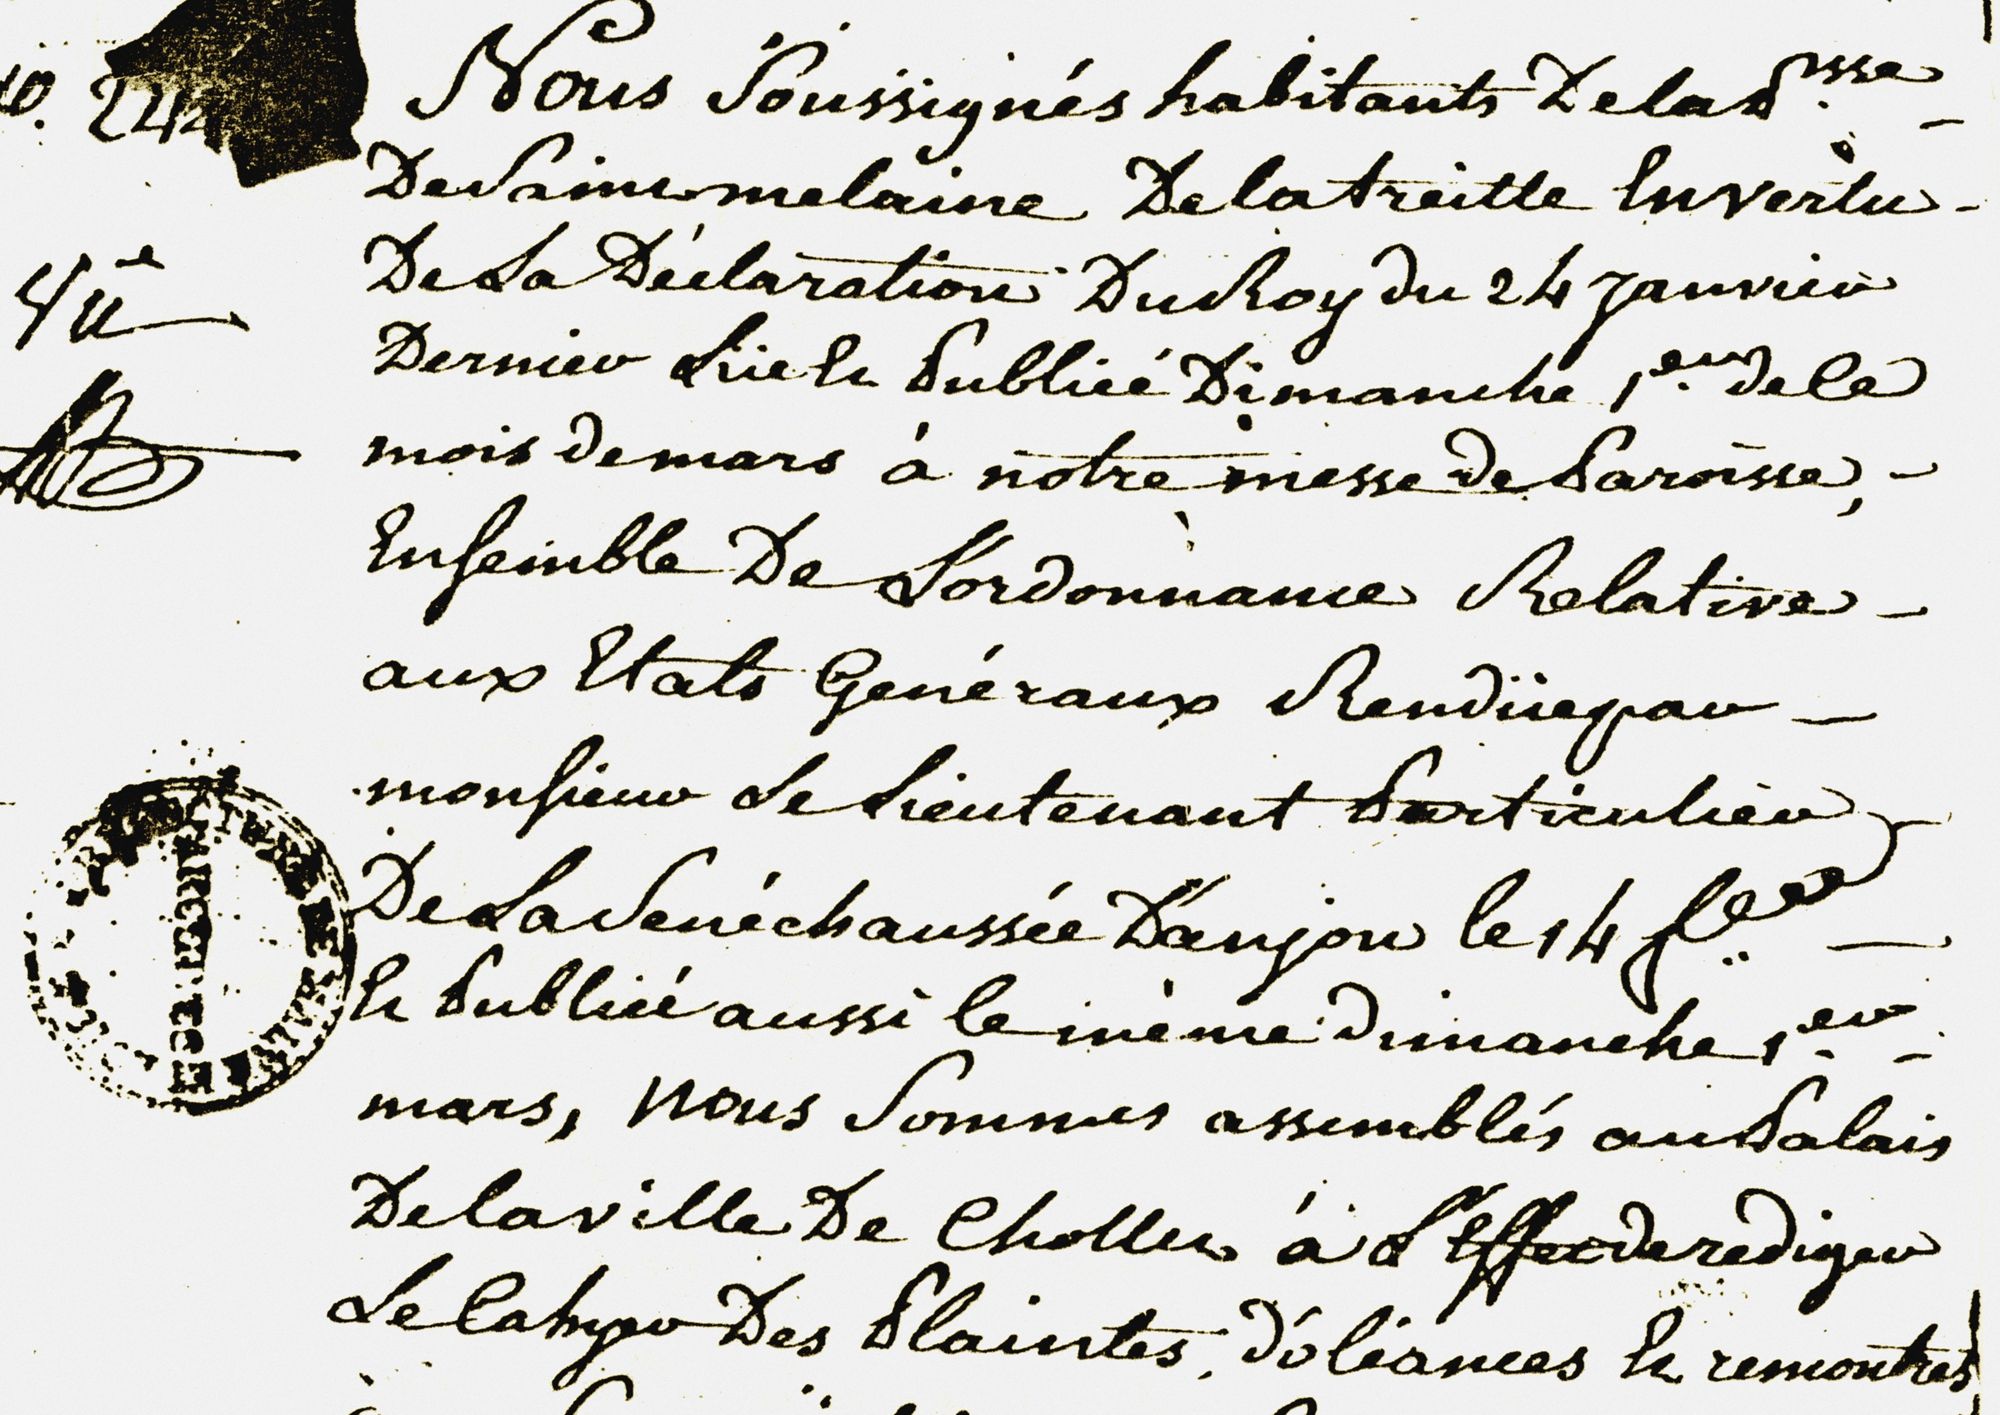 RP3 - Cahier de doléances de Saint-Mélaine de la Treille, 3 mars 1789